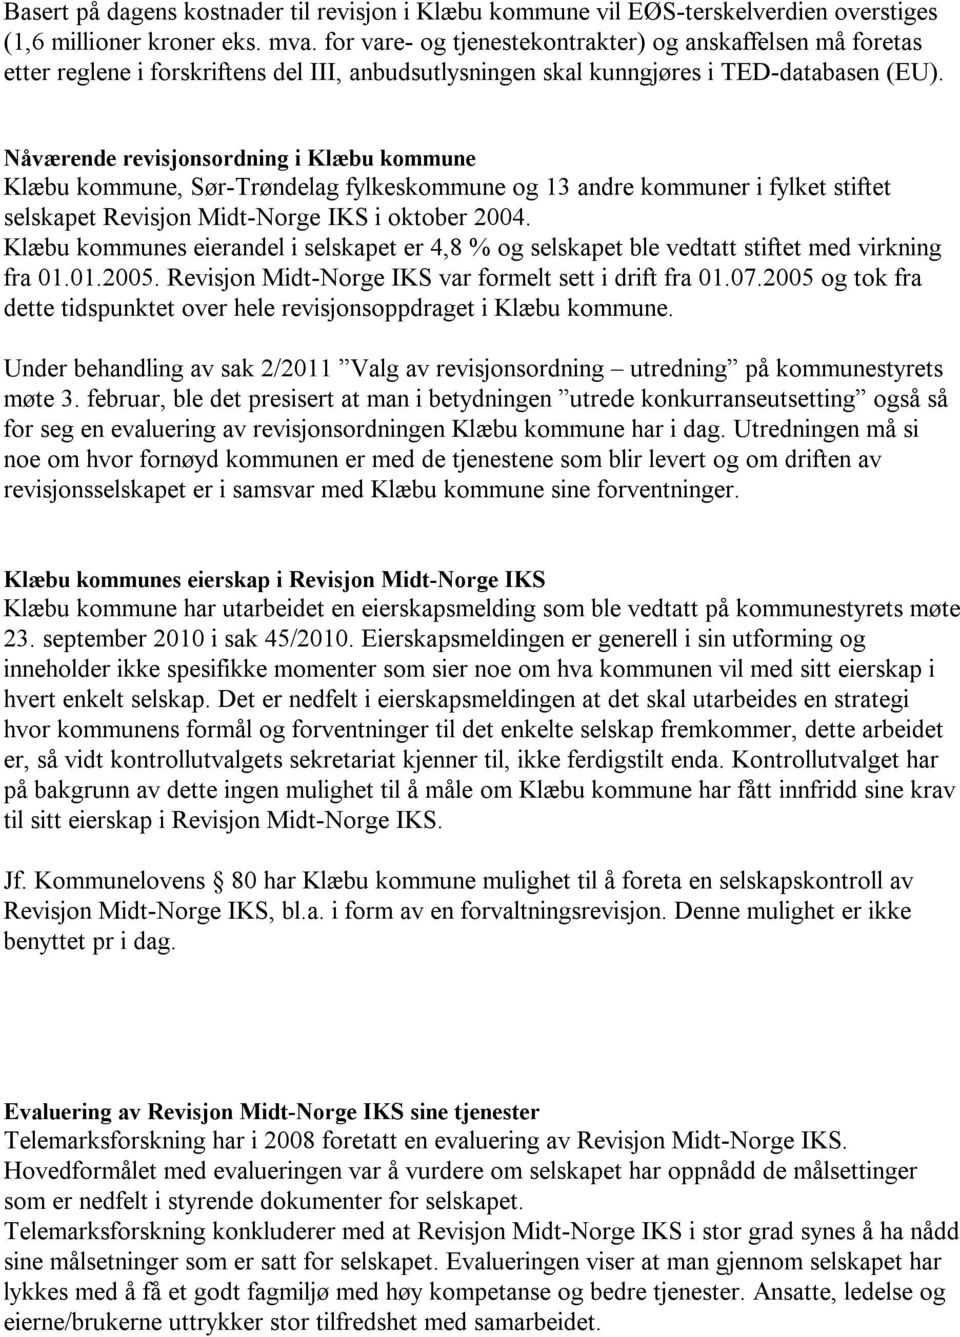 Nåværende revisjonsordning i Klæbu kommune Klæbu kommune, Sør-Trøndelag fylkeskommune og 13 andre kommuner i fylket stiftet selskapet Revisjon Midt-Norge IKS i oktober 2004.